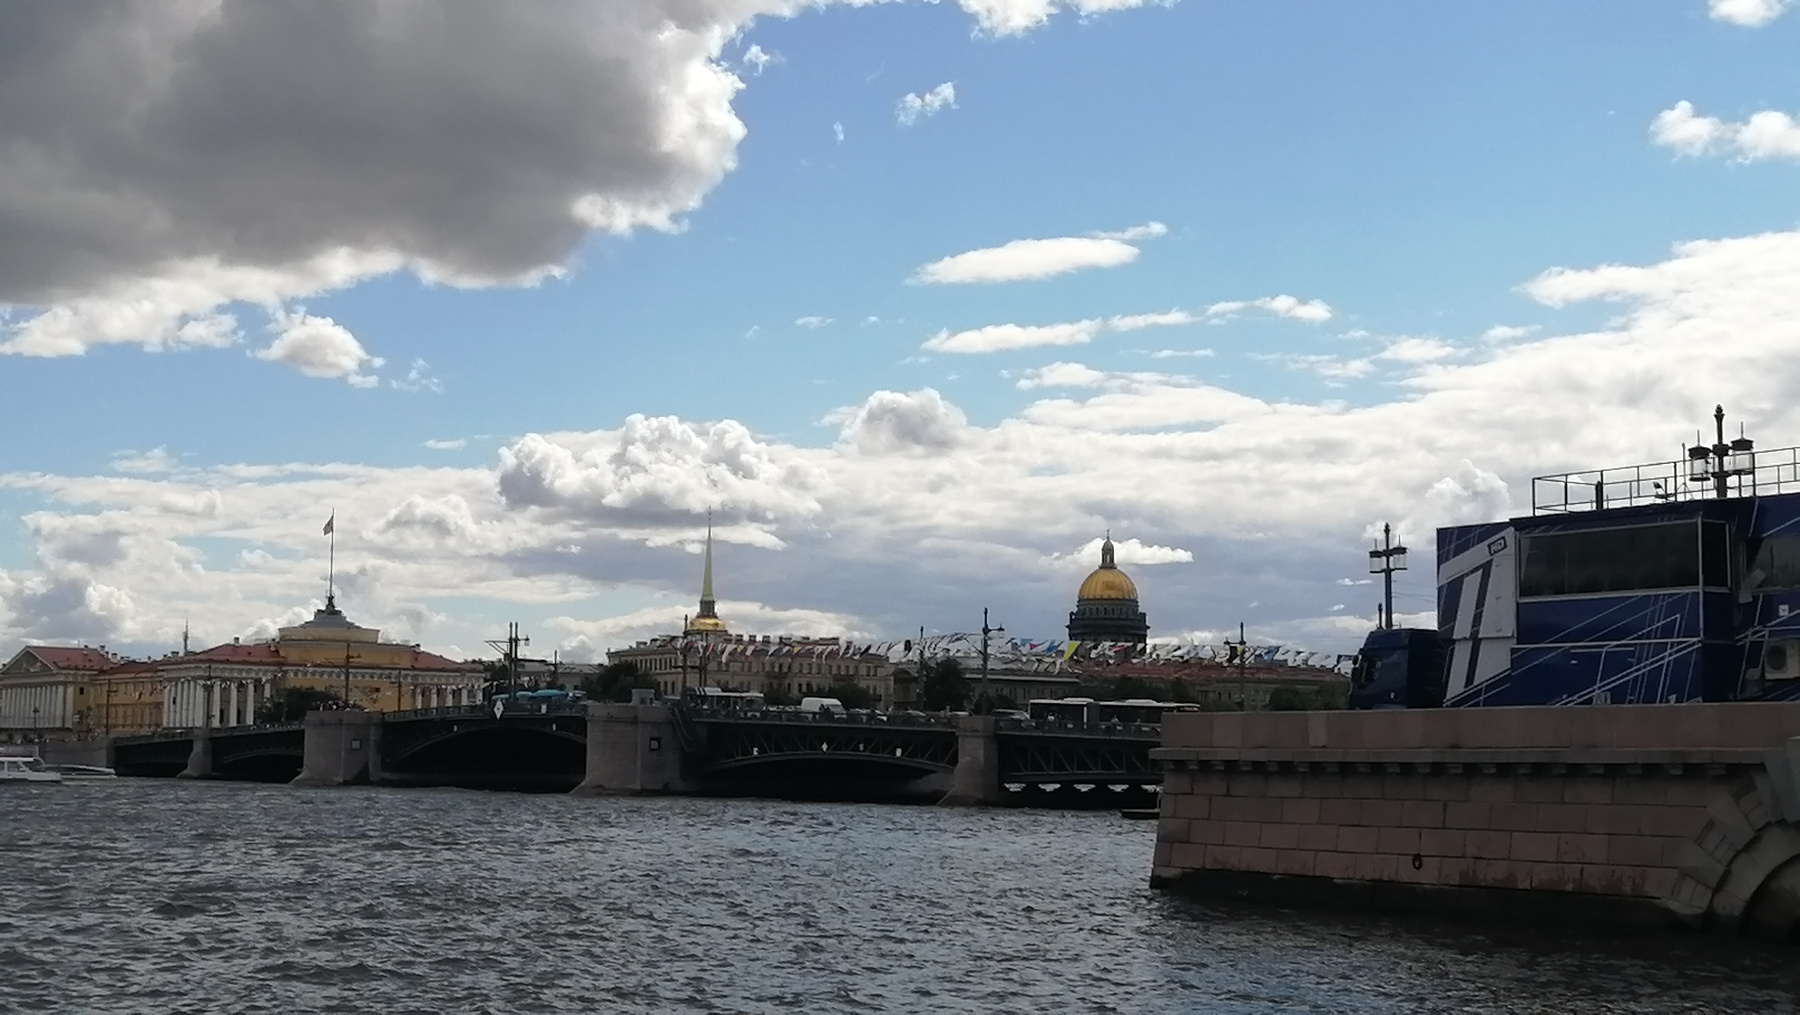 Дворцовый Мост в Санкт-Петербурге 2021 2021 достопримечательности дворцовый мост Санкт-Петербург лето июль